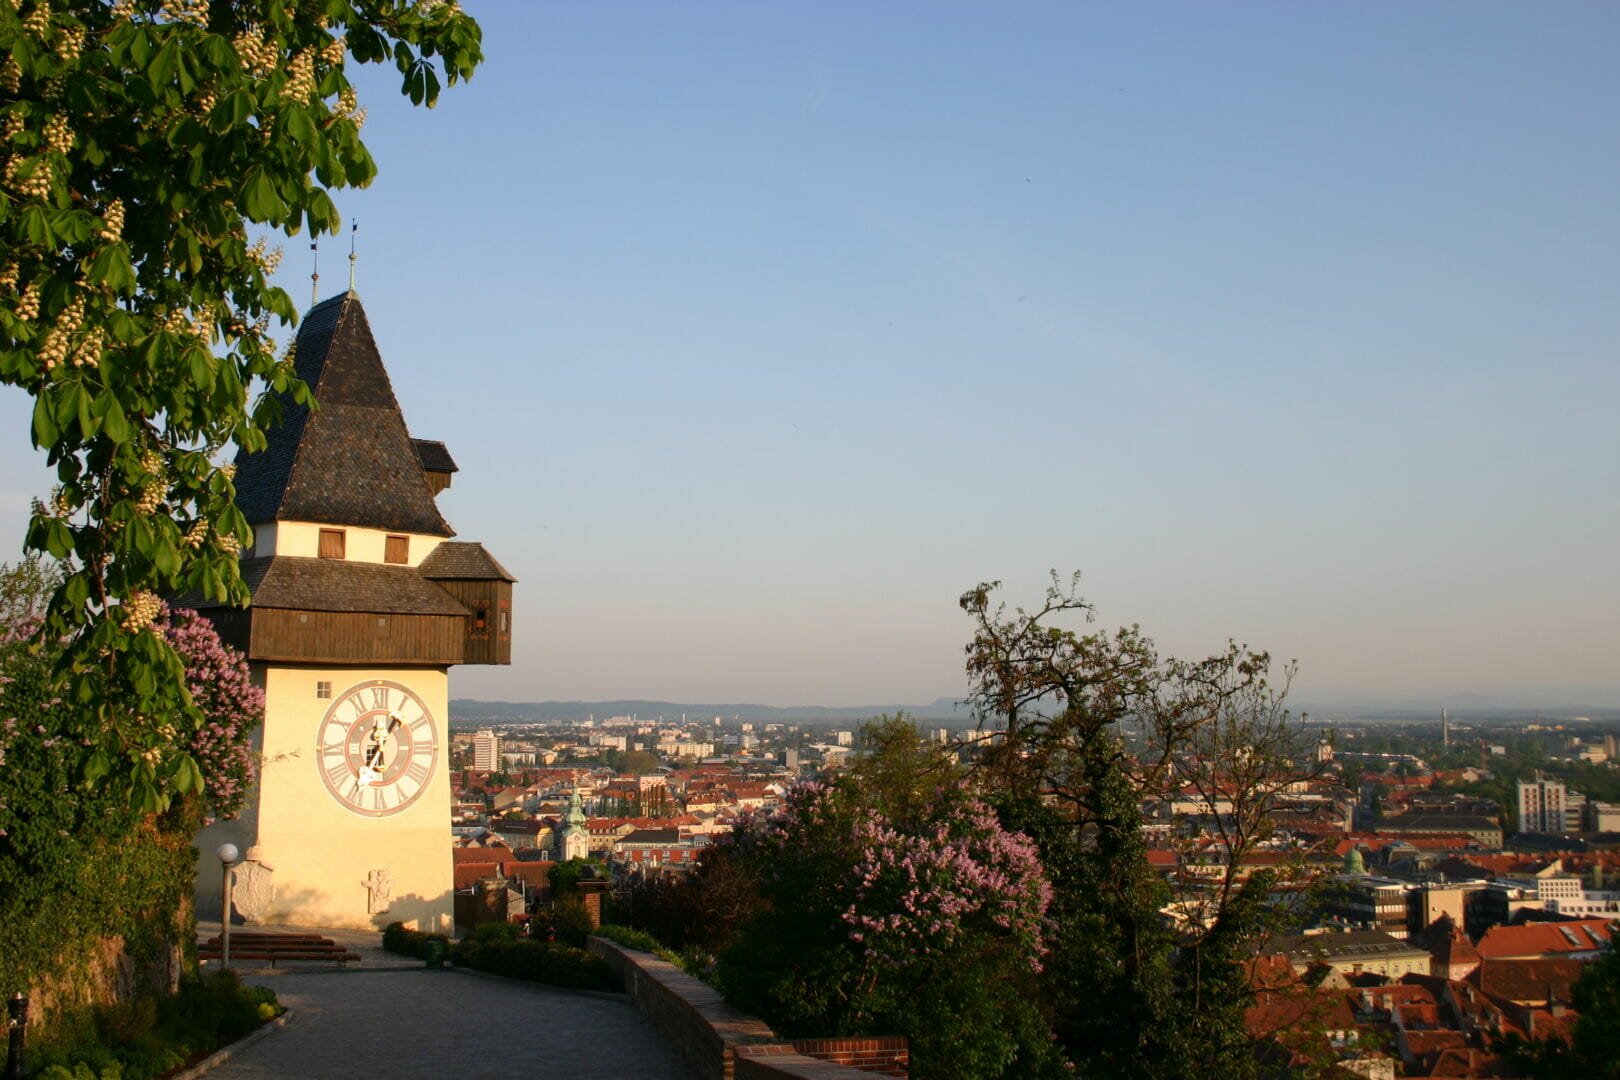 Der Grazer Uhrturm, das Wahrzeichen von Graz. Graz ist die Stadt in der der Kurs stattfindet.